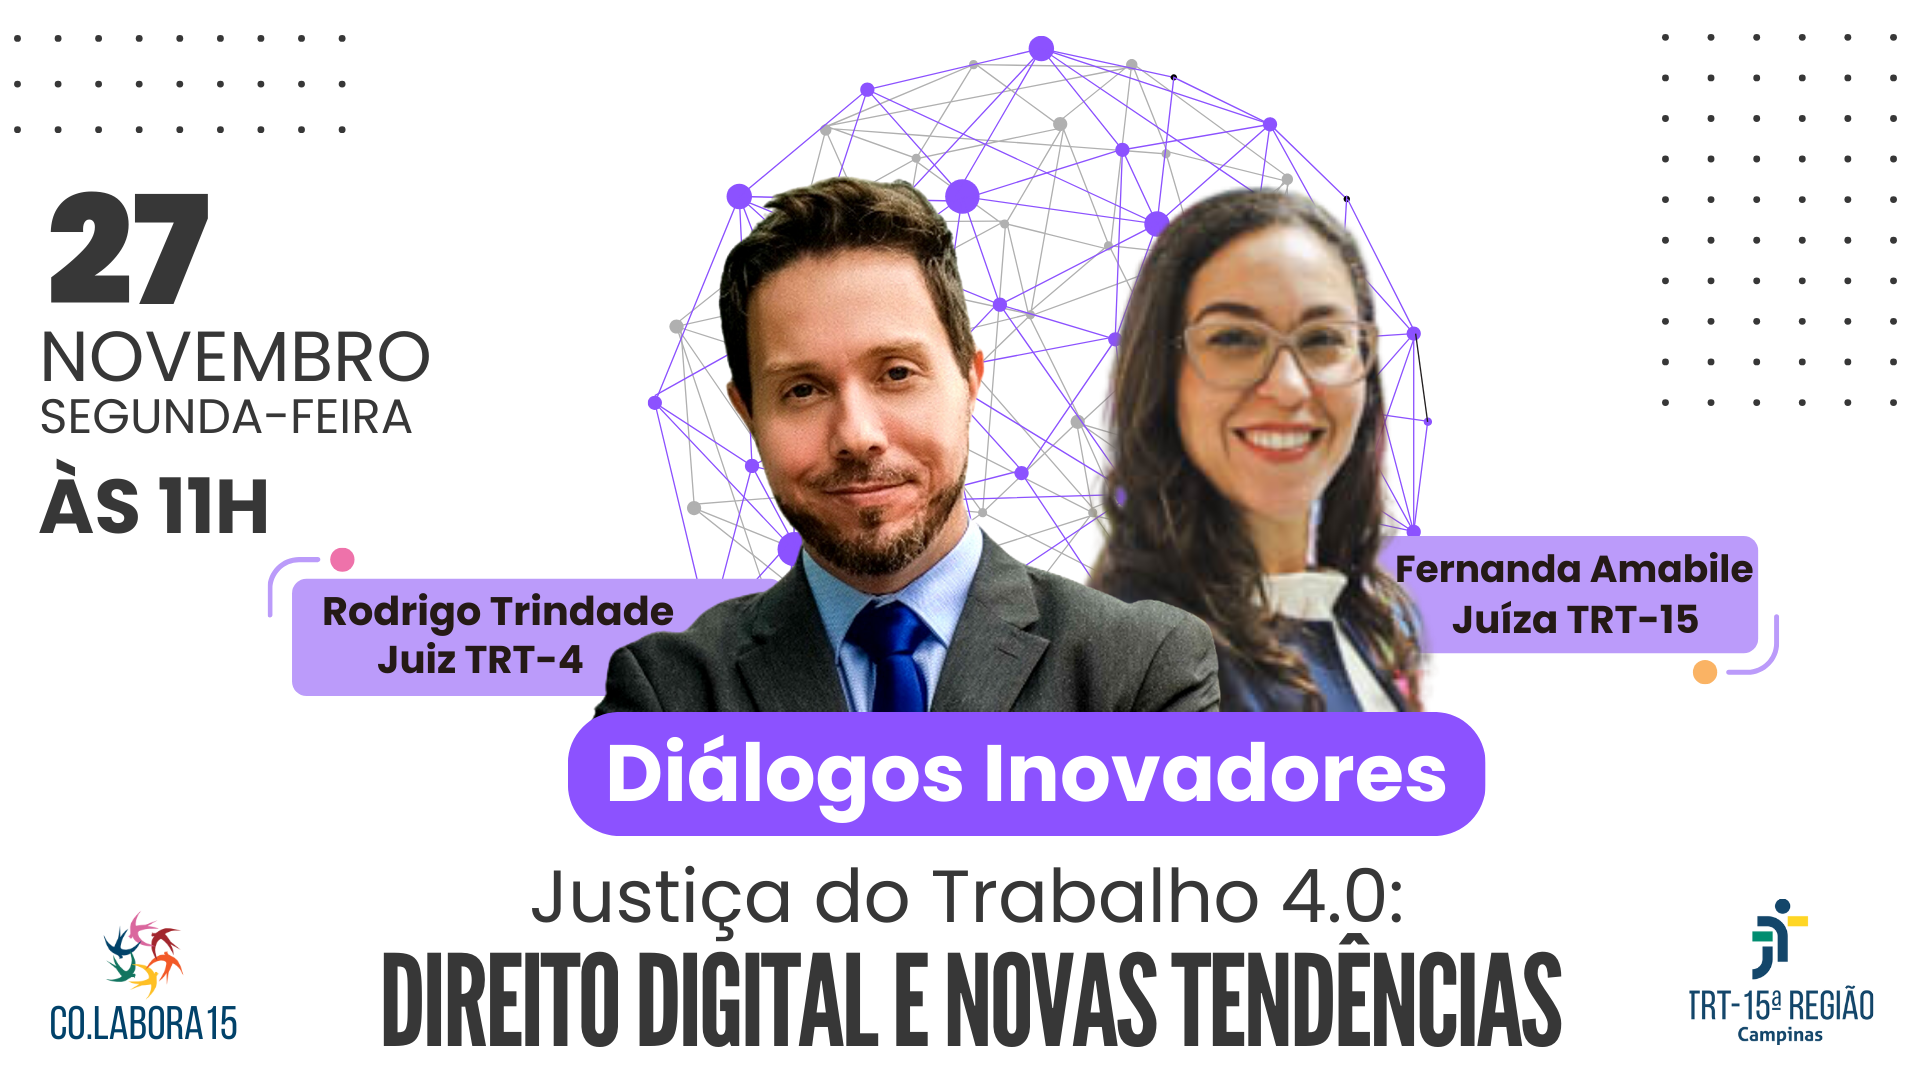 Diálogos inovadores: juízes Rodrigo Trindade (TRT-4) e Fernanda Amabile (TRT-15) falam sobre novas tendências do Direito Digital na segunda-feira (27/11), às 11h